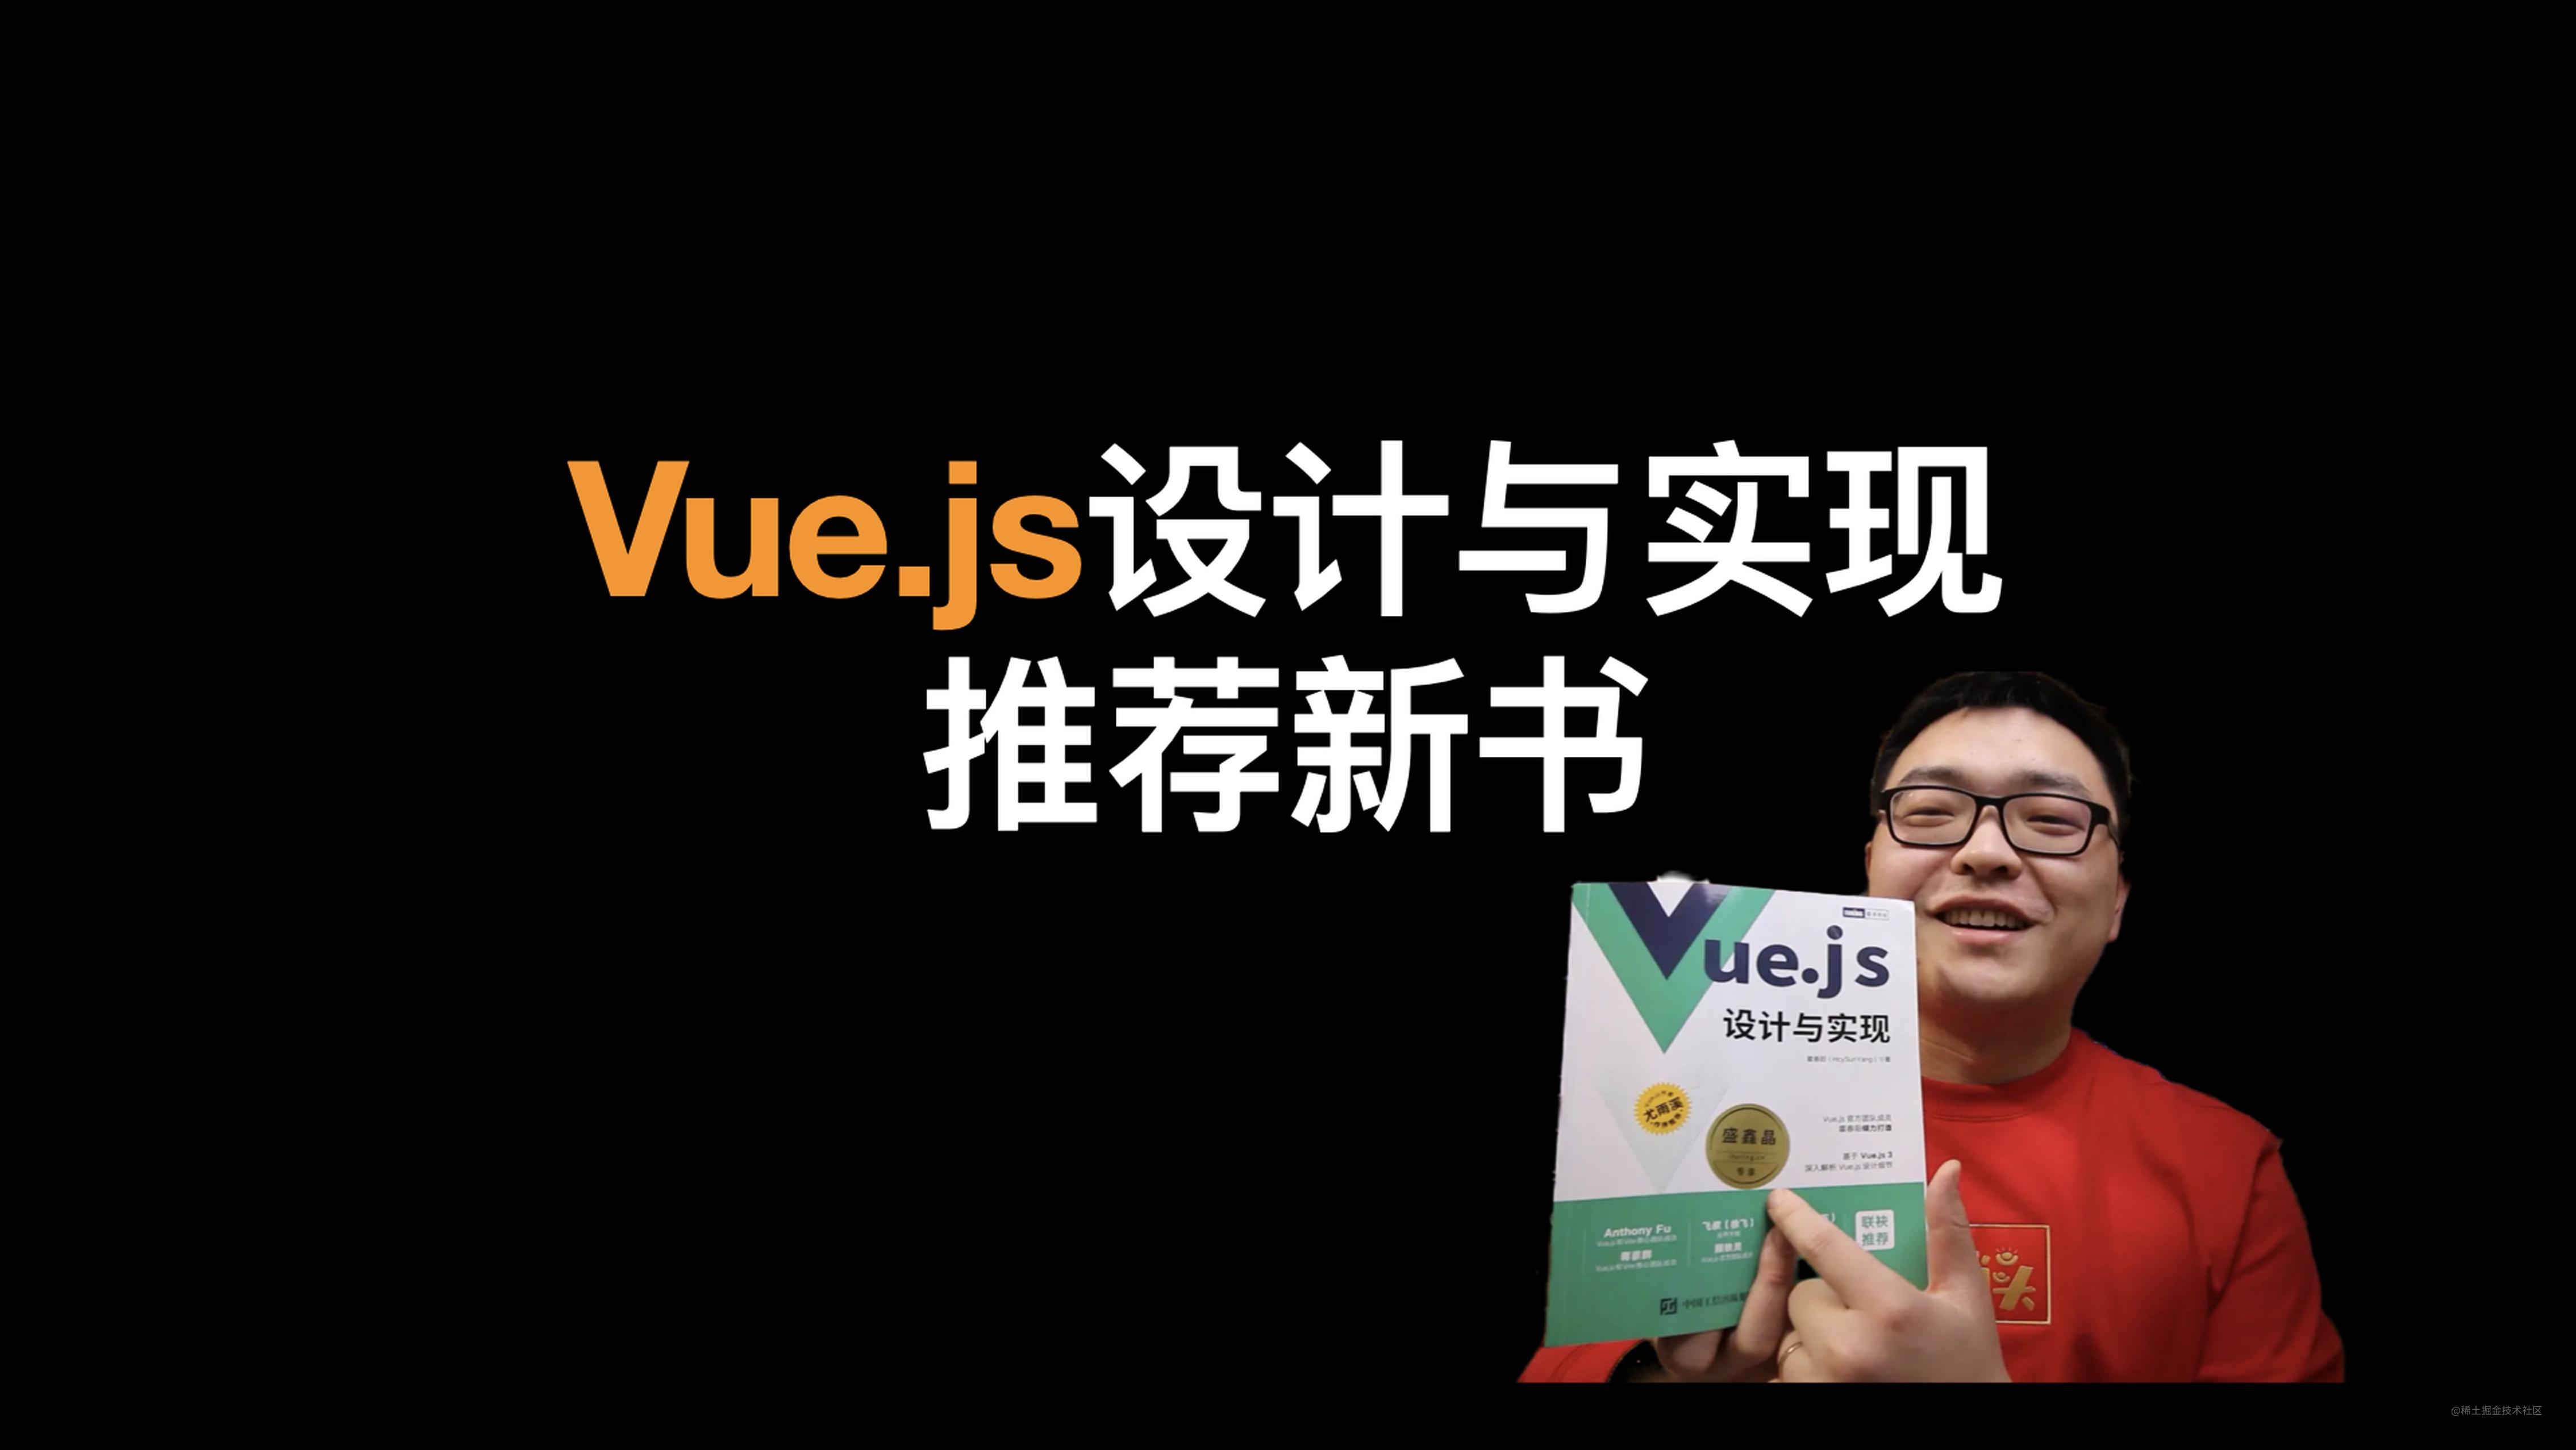   推荐2022前端必看的新书 《Vue.js设计与实现》